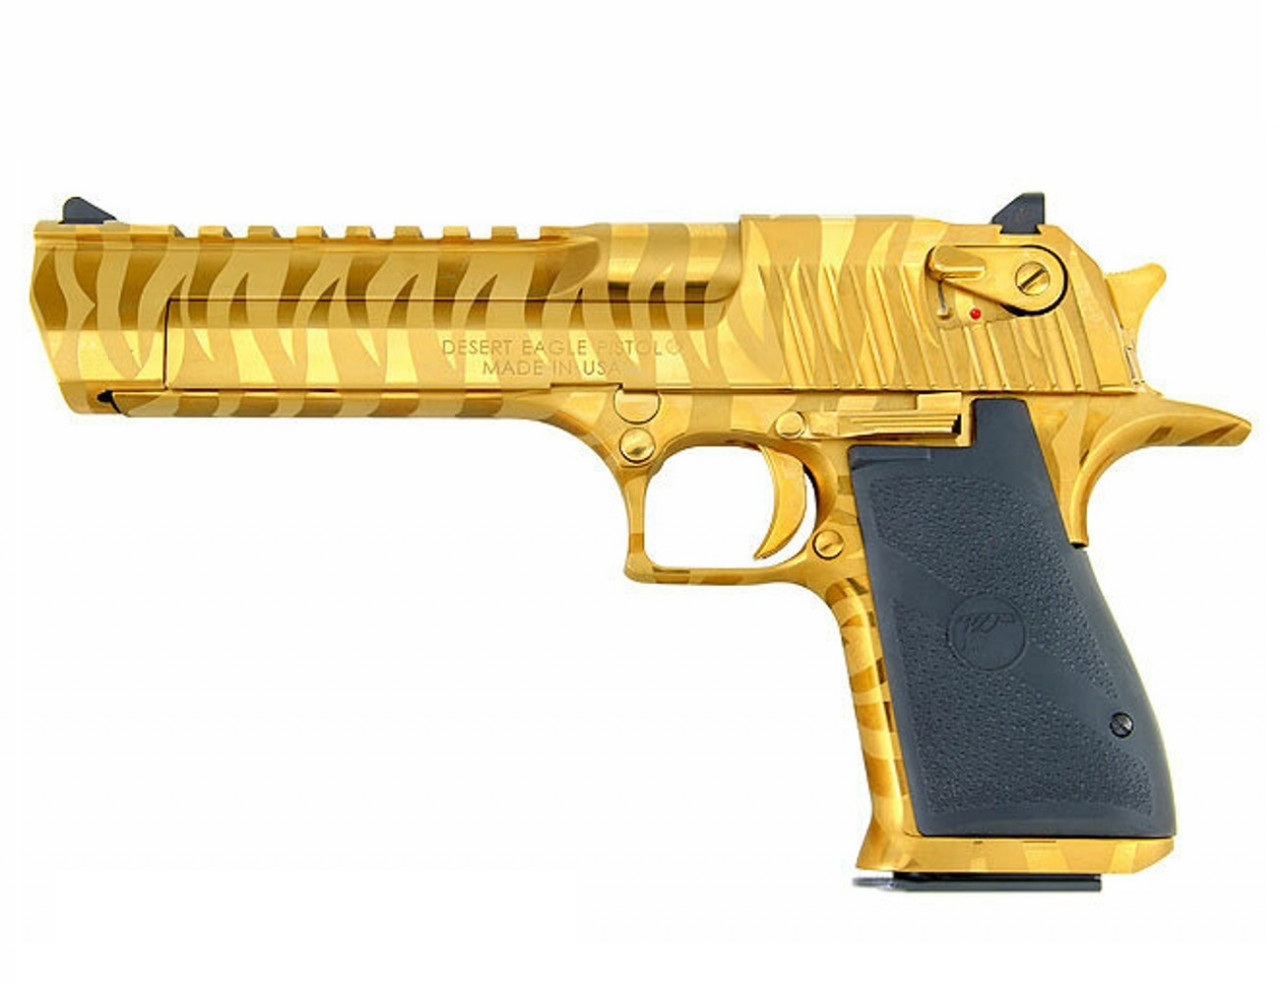 Desert Eagle 6 Gold Tiger Stripe, Pistols, Handguns